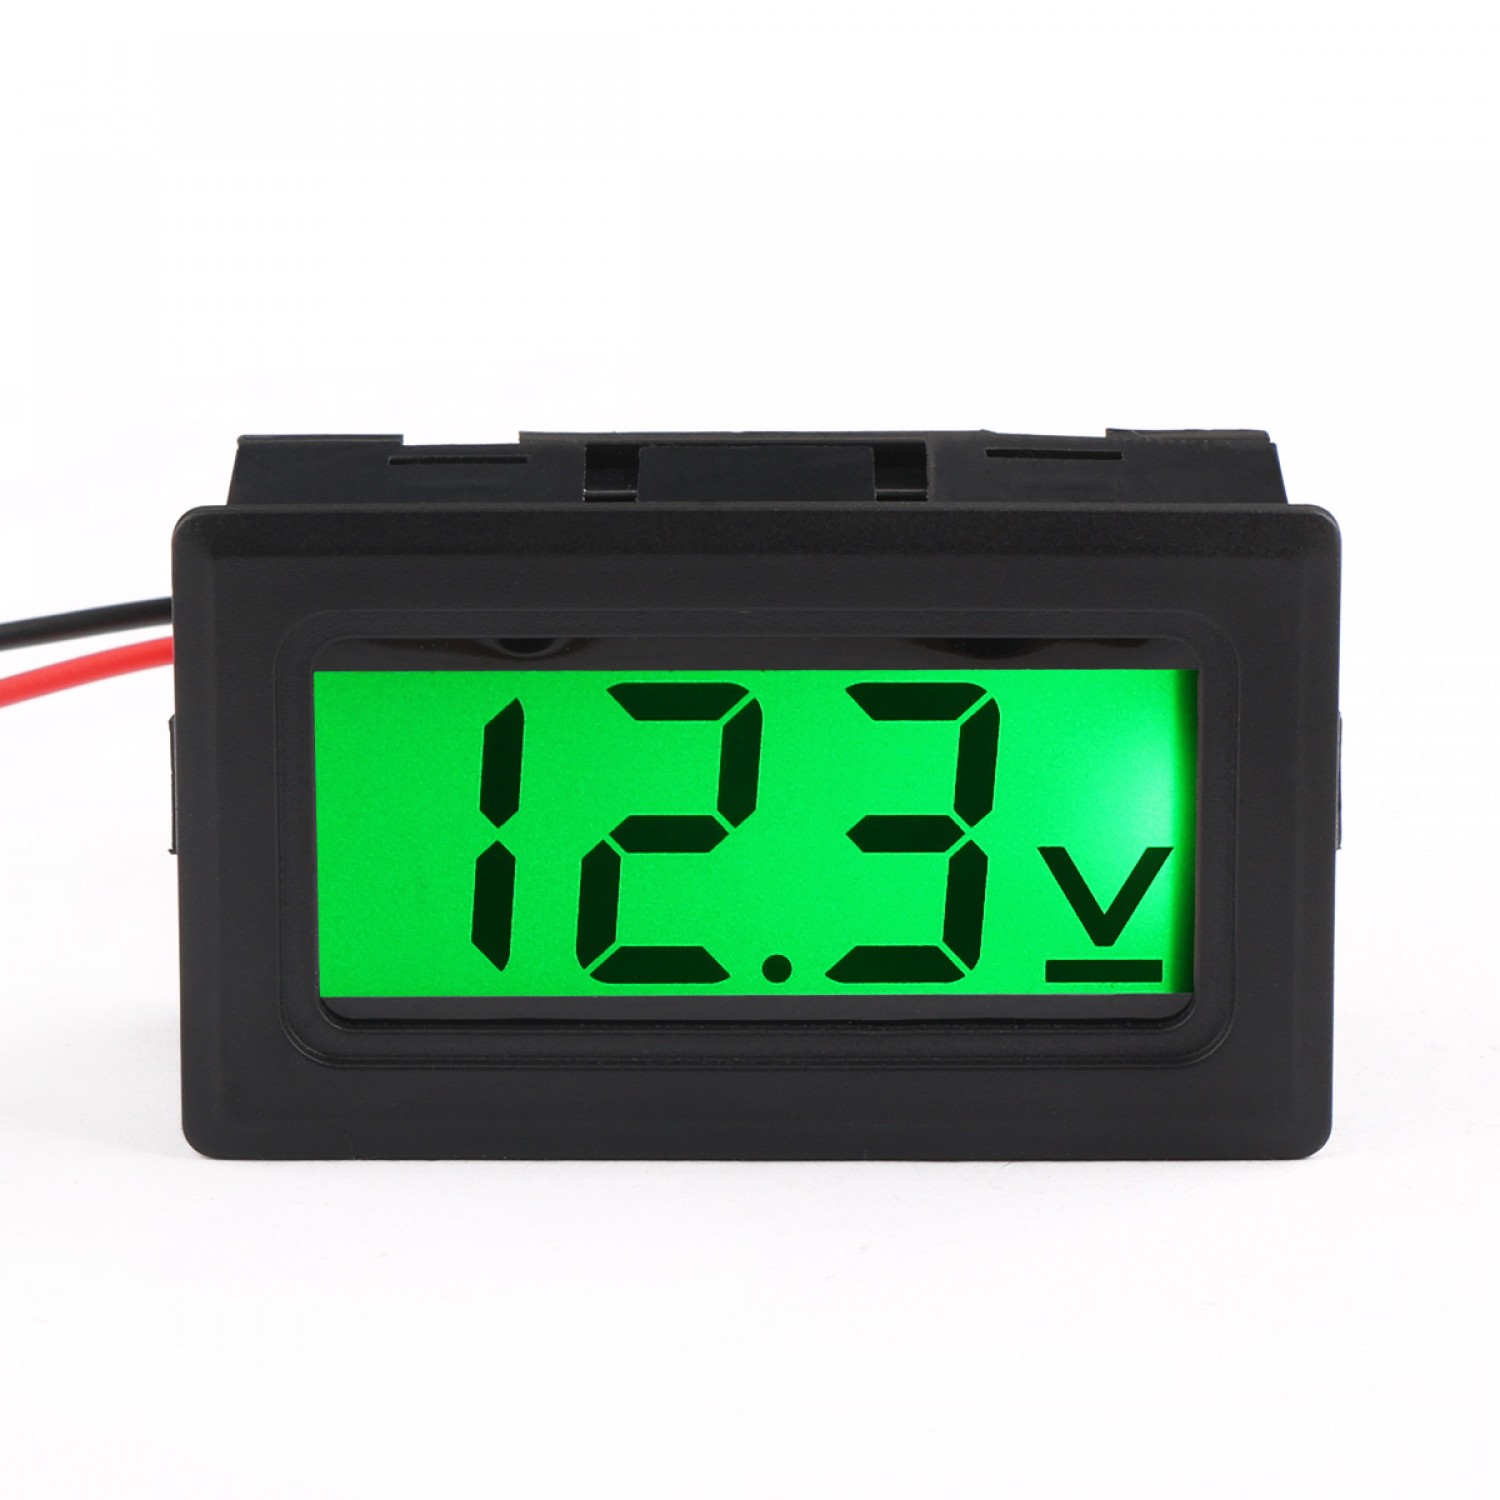 DC 0-30V Digital Voltmeter 2-Wrie DC Voltage Meter Green LCD Display